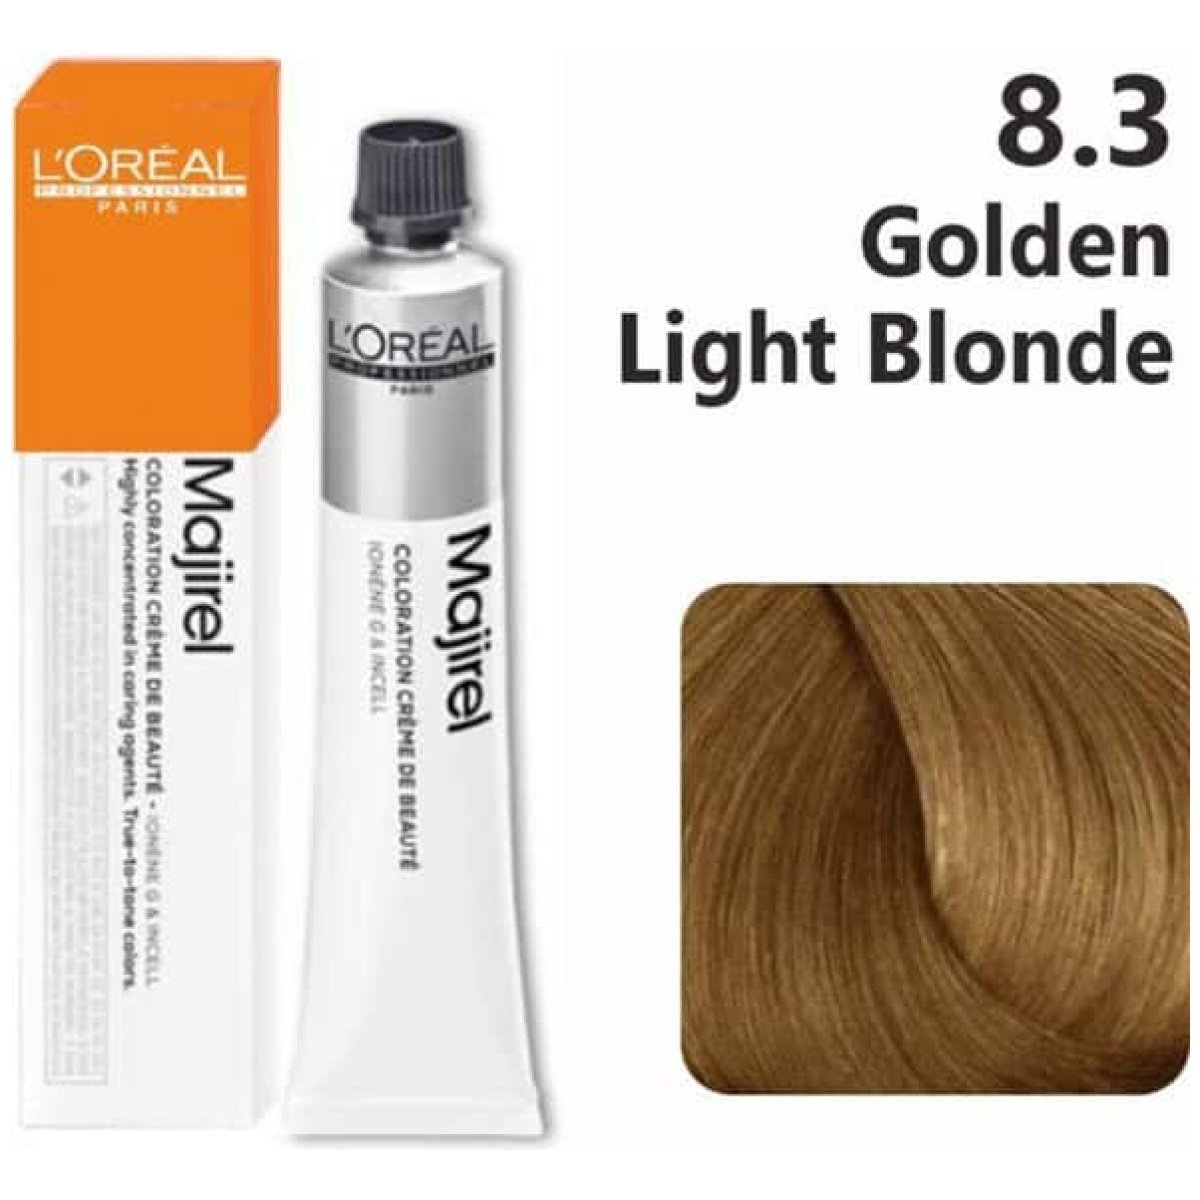 L'Oreal Professionnel Majirel Hair Color 50G 8.3 Golden Light Blonde